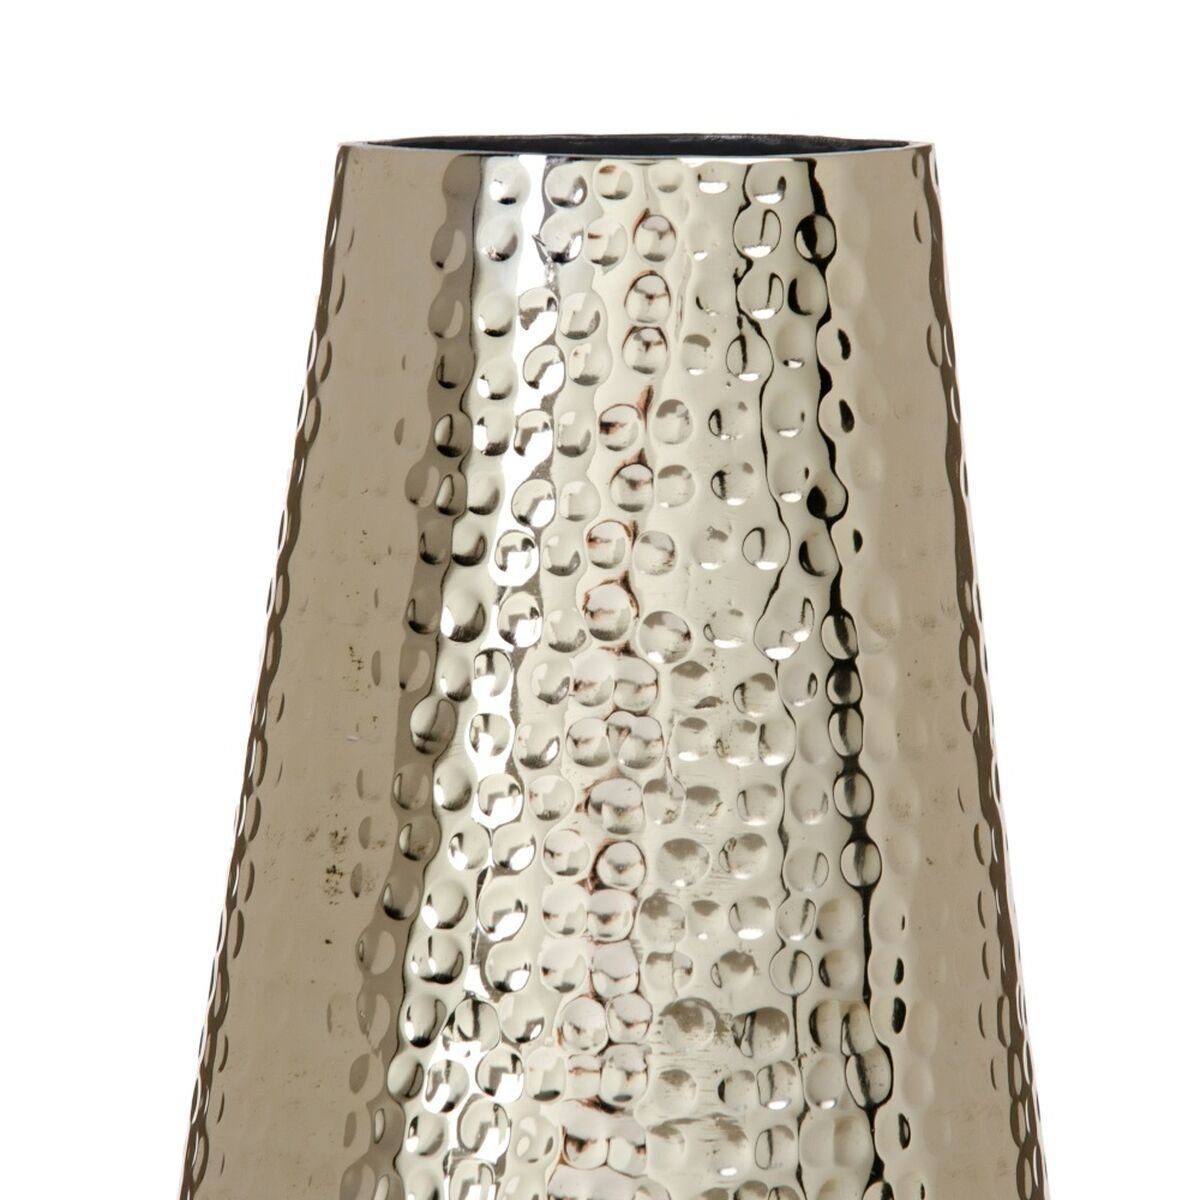 Aluminium x Vase x cm Dekovase 14 Bigbuy 14 Gold 31